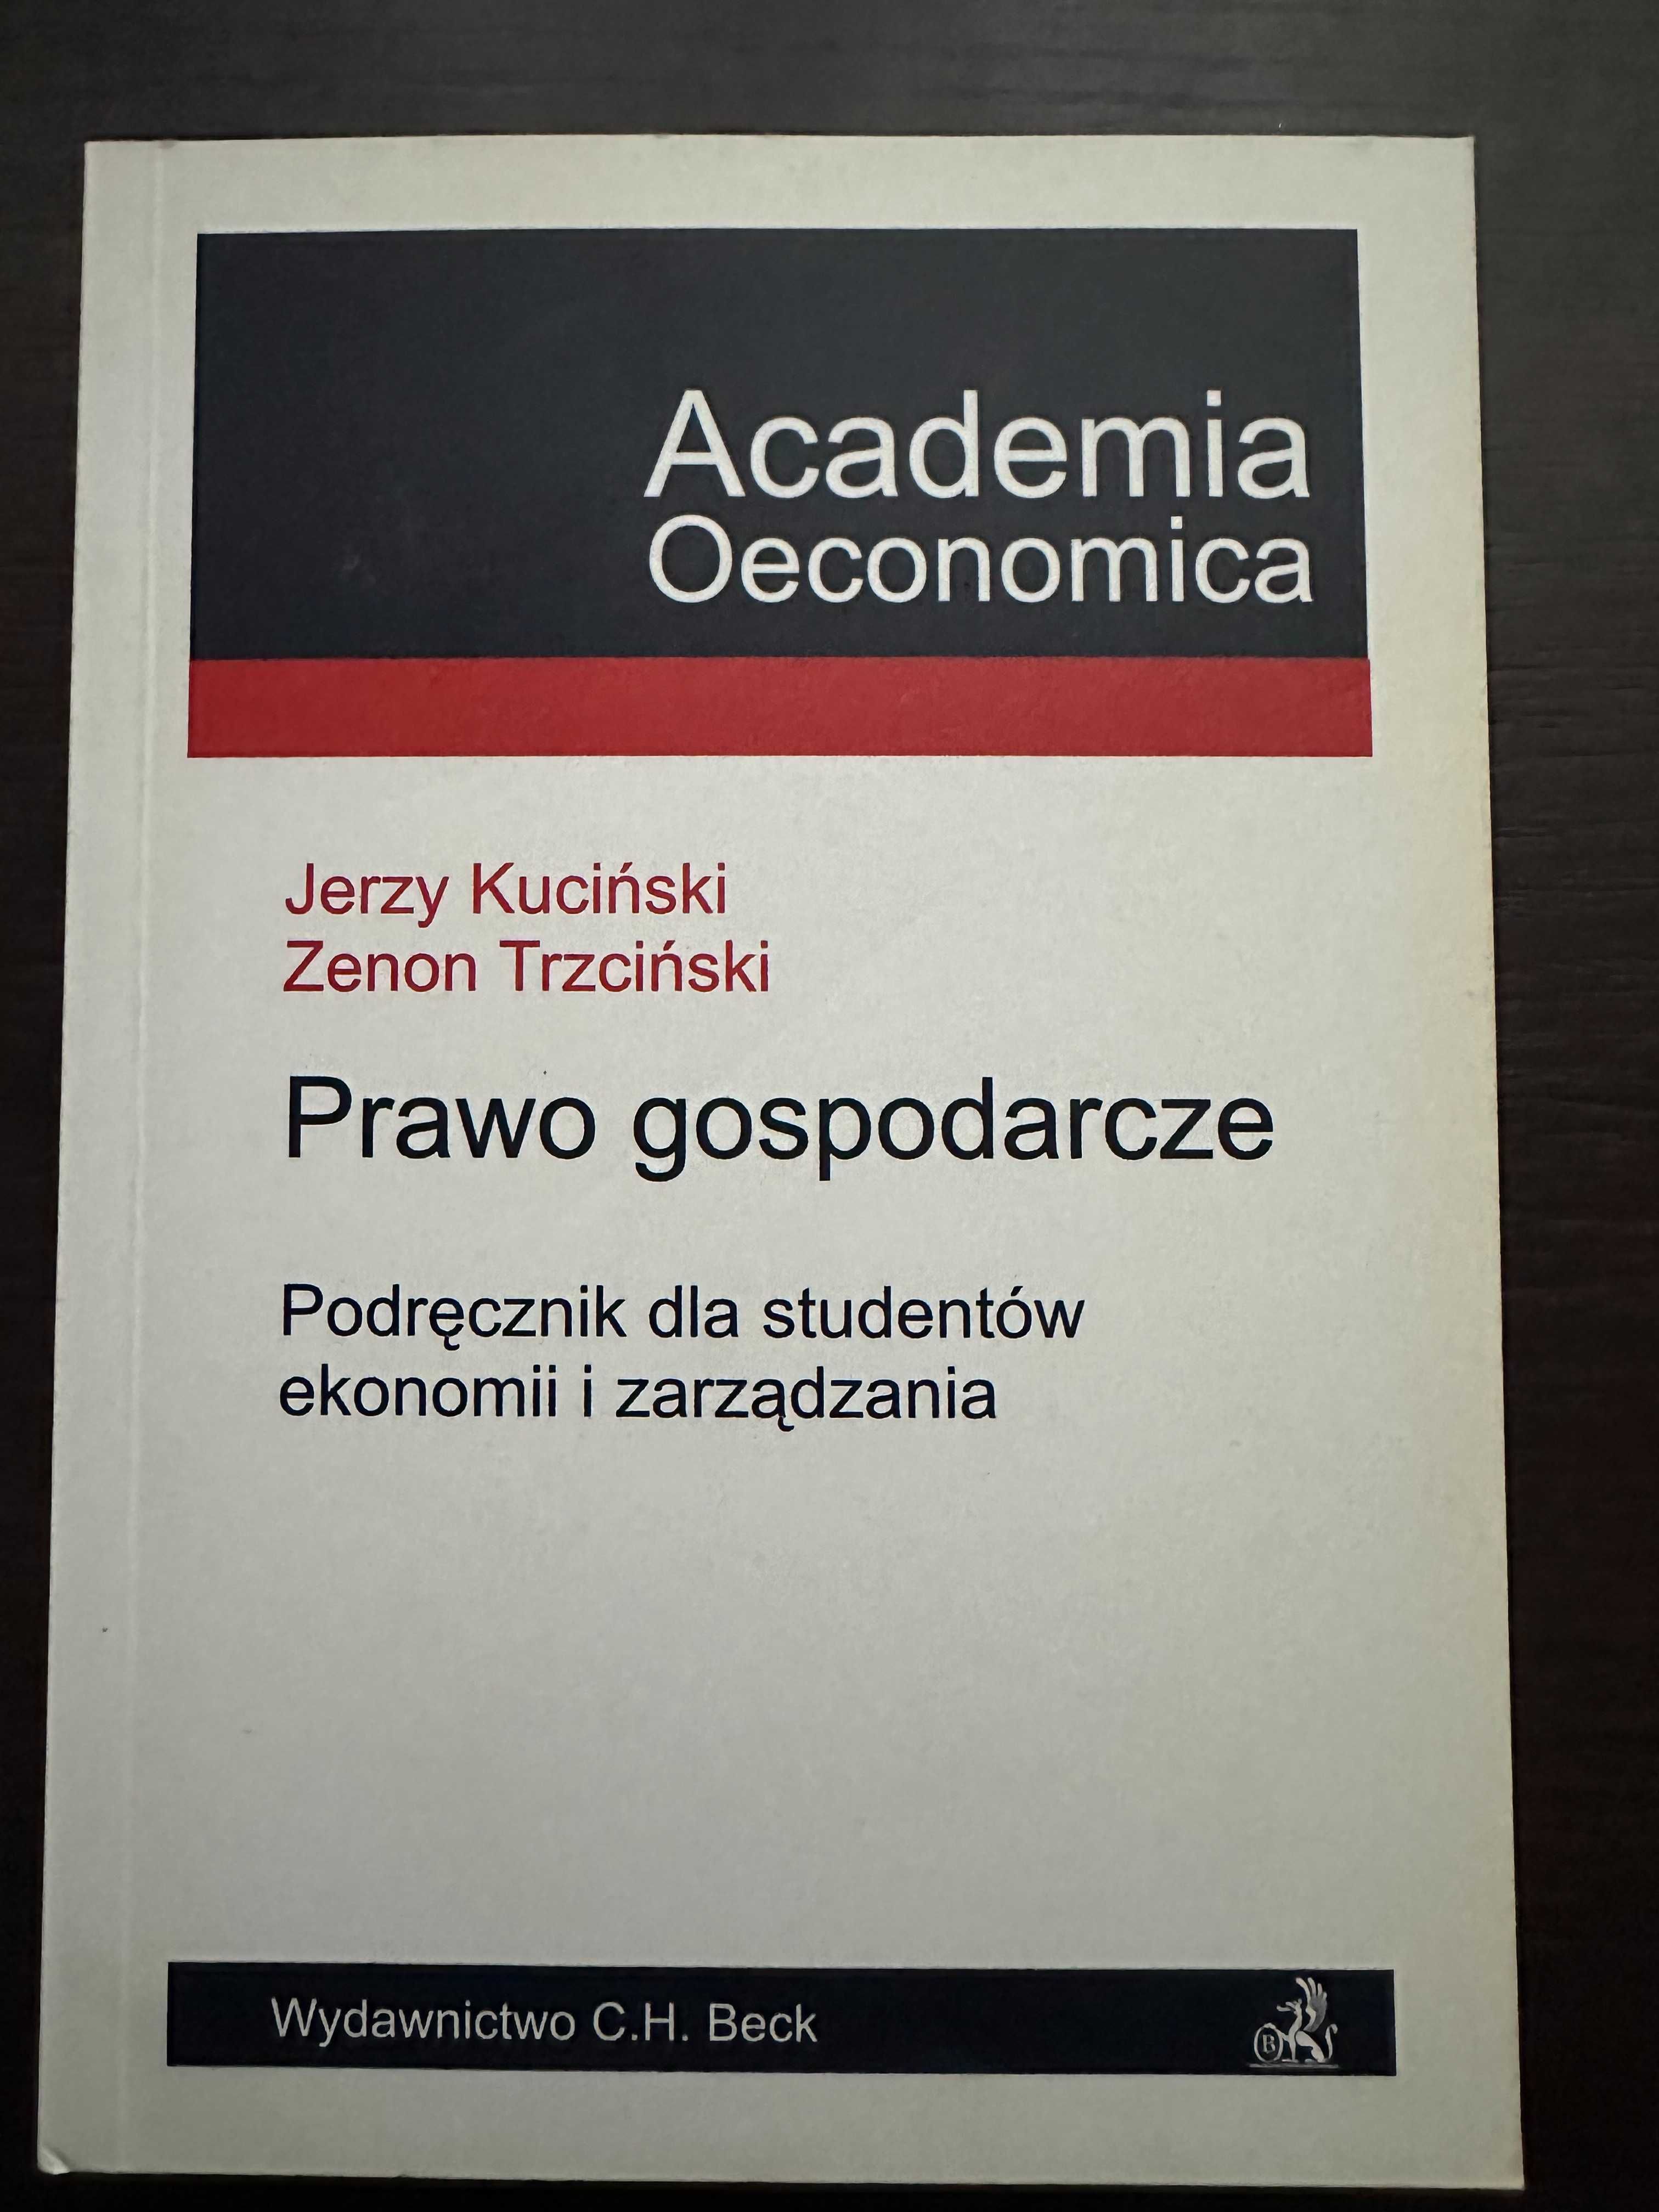 Prawo Gospodarcze J. Kuciński 2002 r.